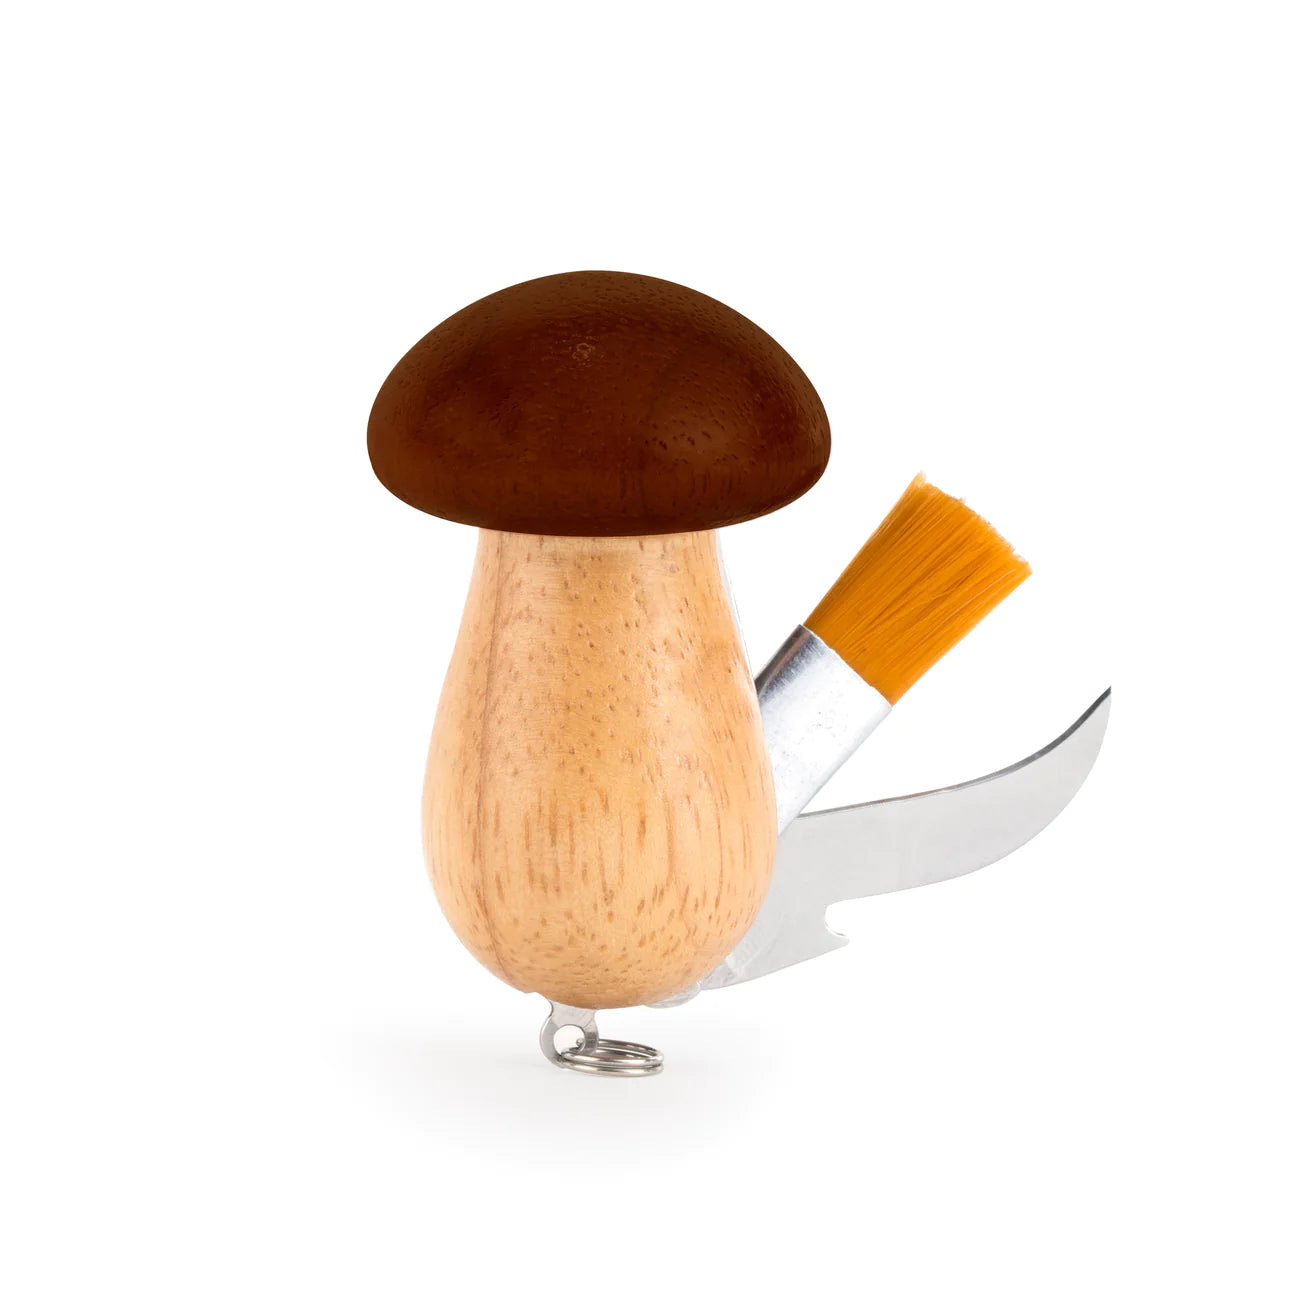 Kikkerland Mushroom Tool Keychain